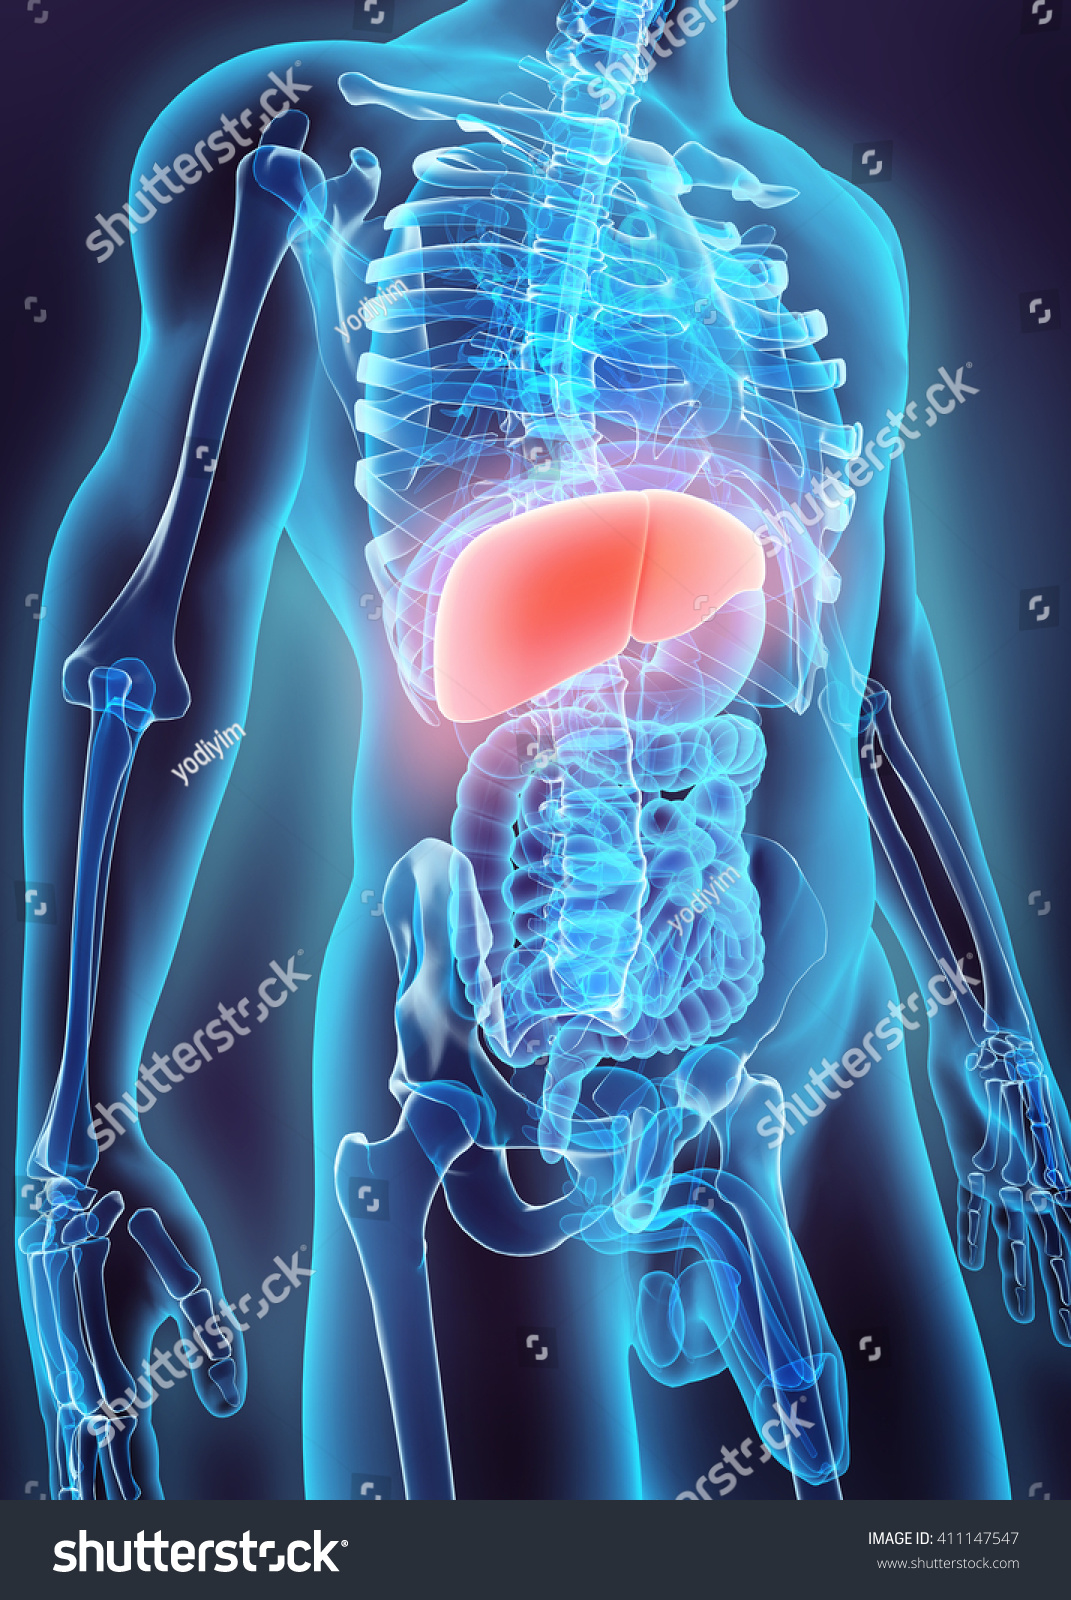 3d Illustration Of Liver - Part Of Digestive System. - 411147547